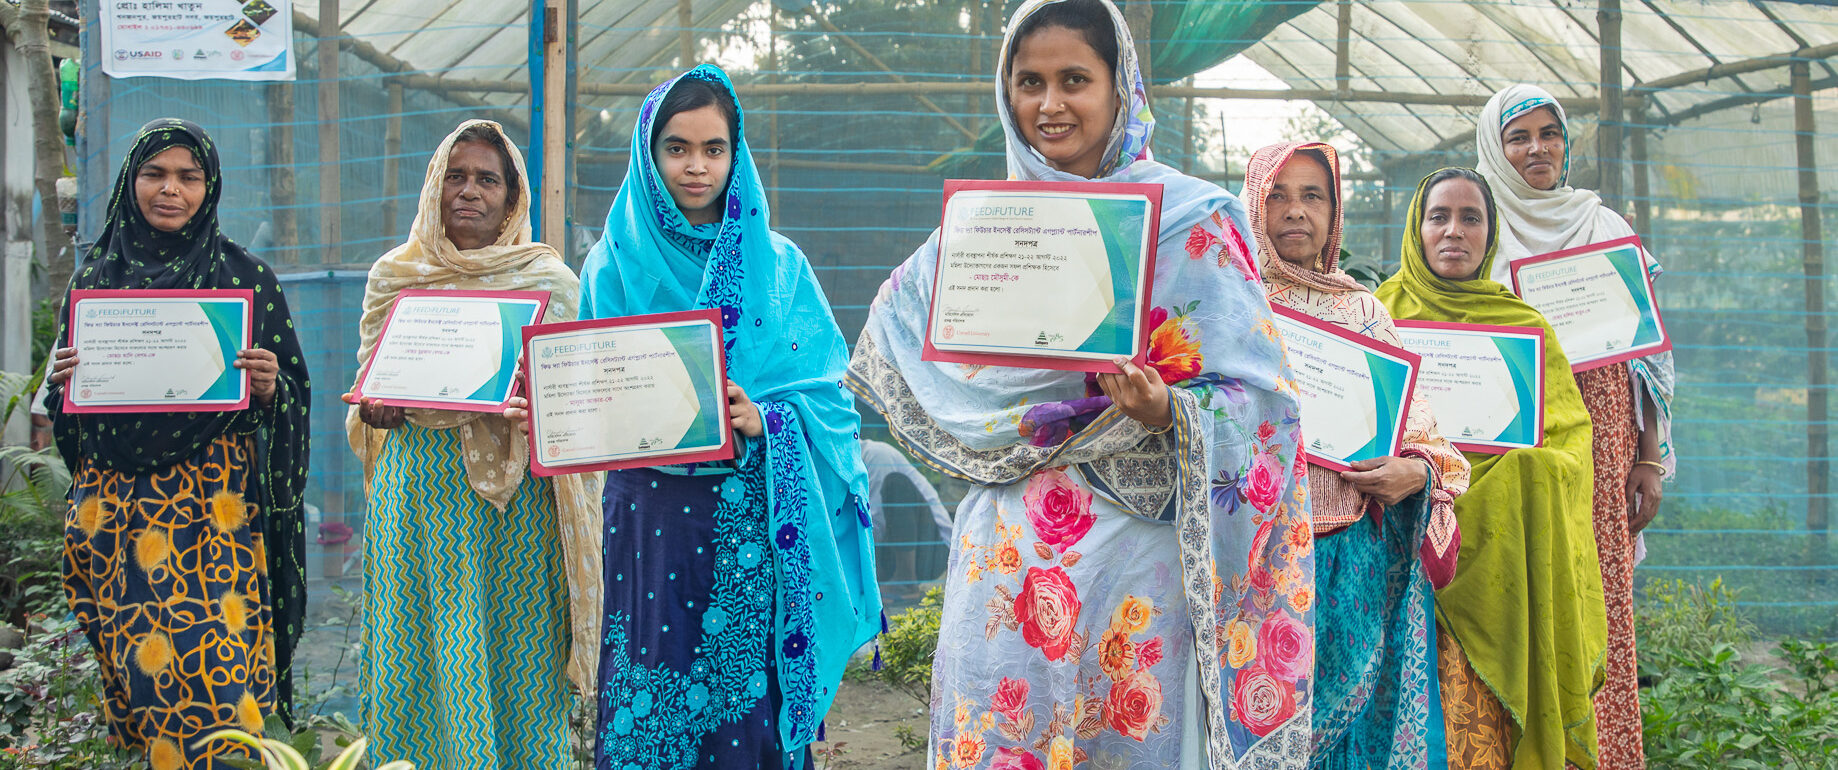 Women entrepreneurs in Bangladesh